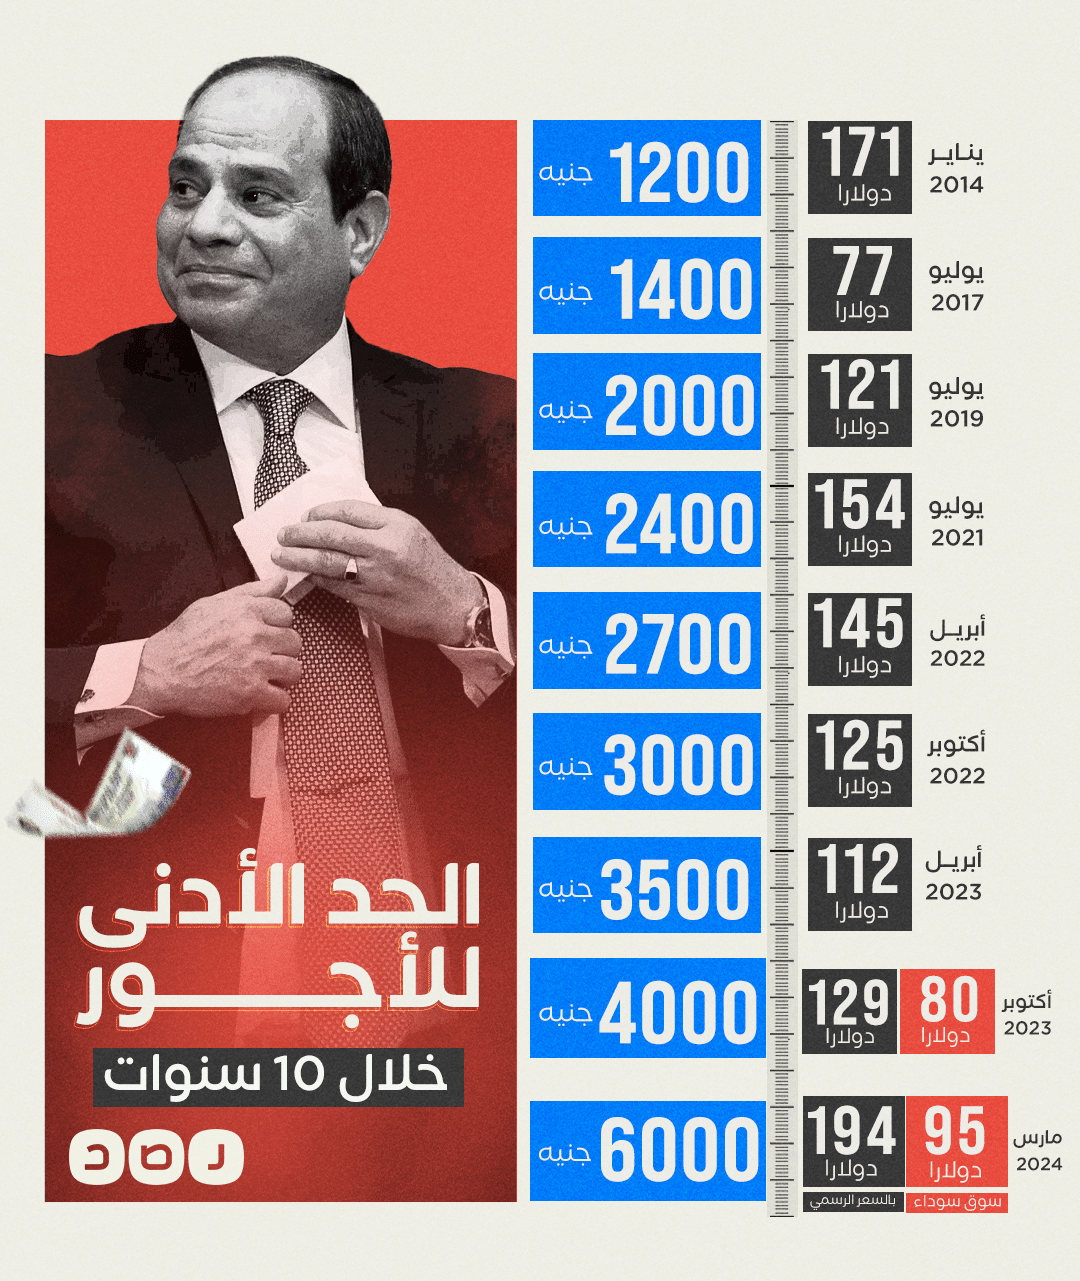 إنفوجراف يبين قيمة الحد الأدنى للأجور في مصر منذ وصول السيسي 